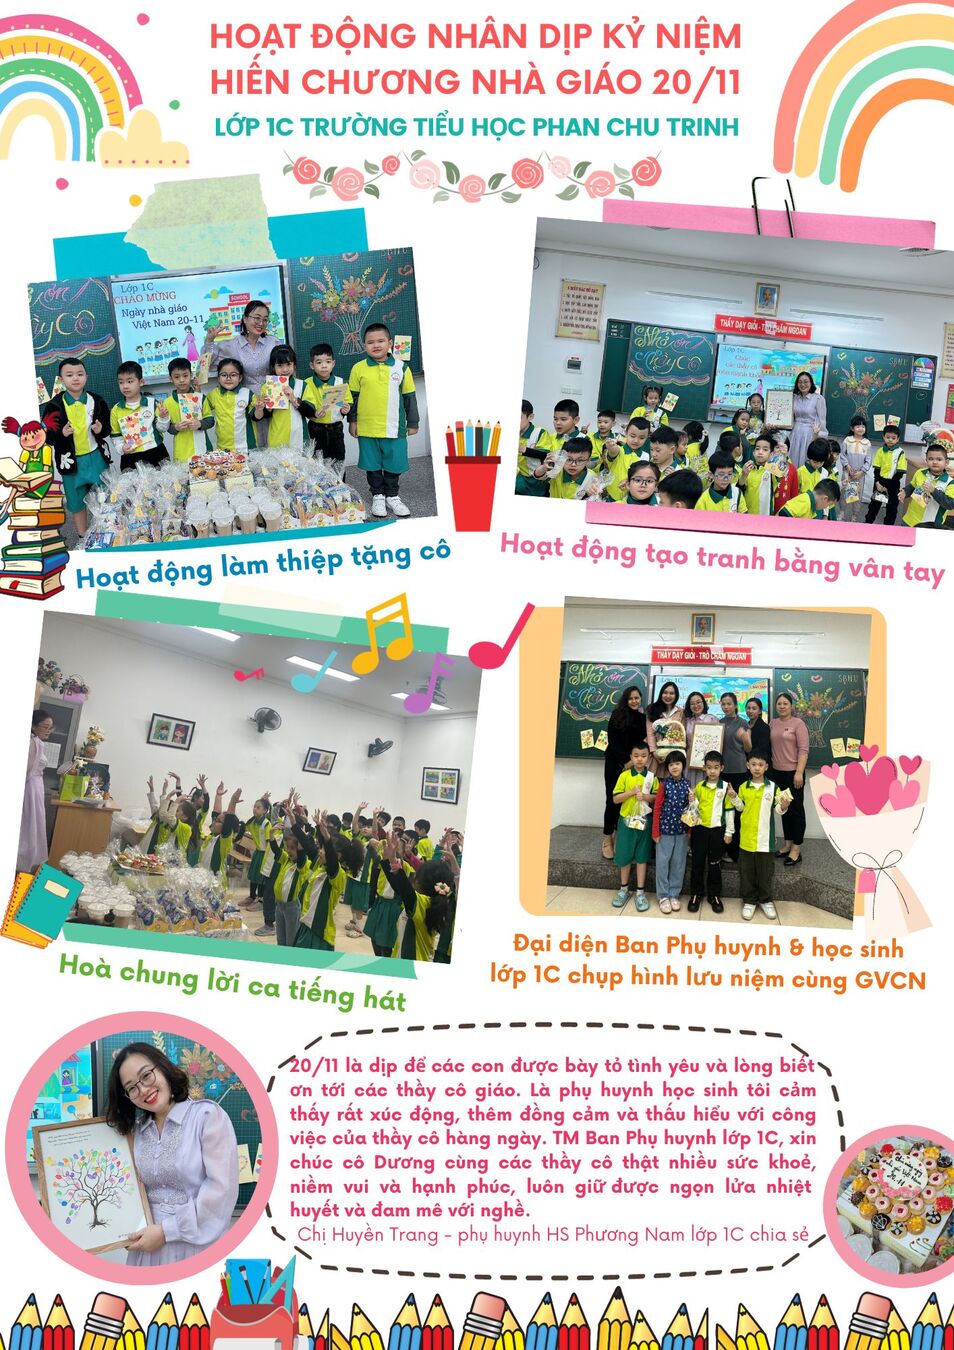 Các hoạt động ý nghĩa Chào mừng Ngày 20/11 của lớp 1C Trường Tiểu học Phan Chu Trinh